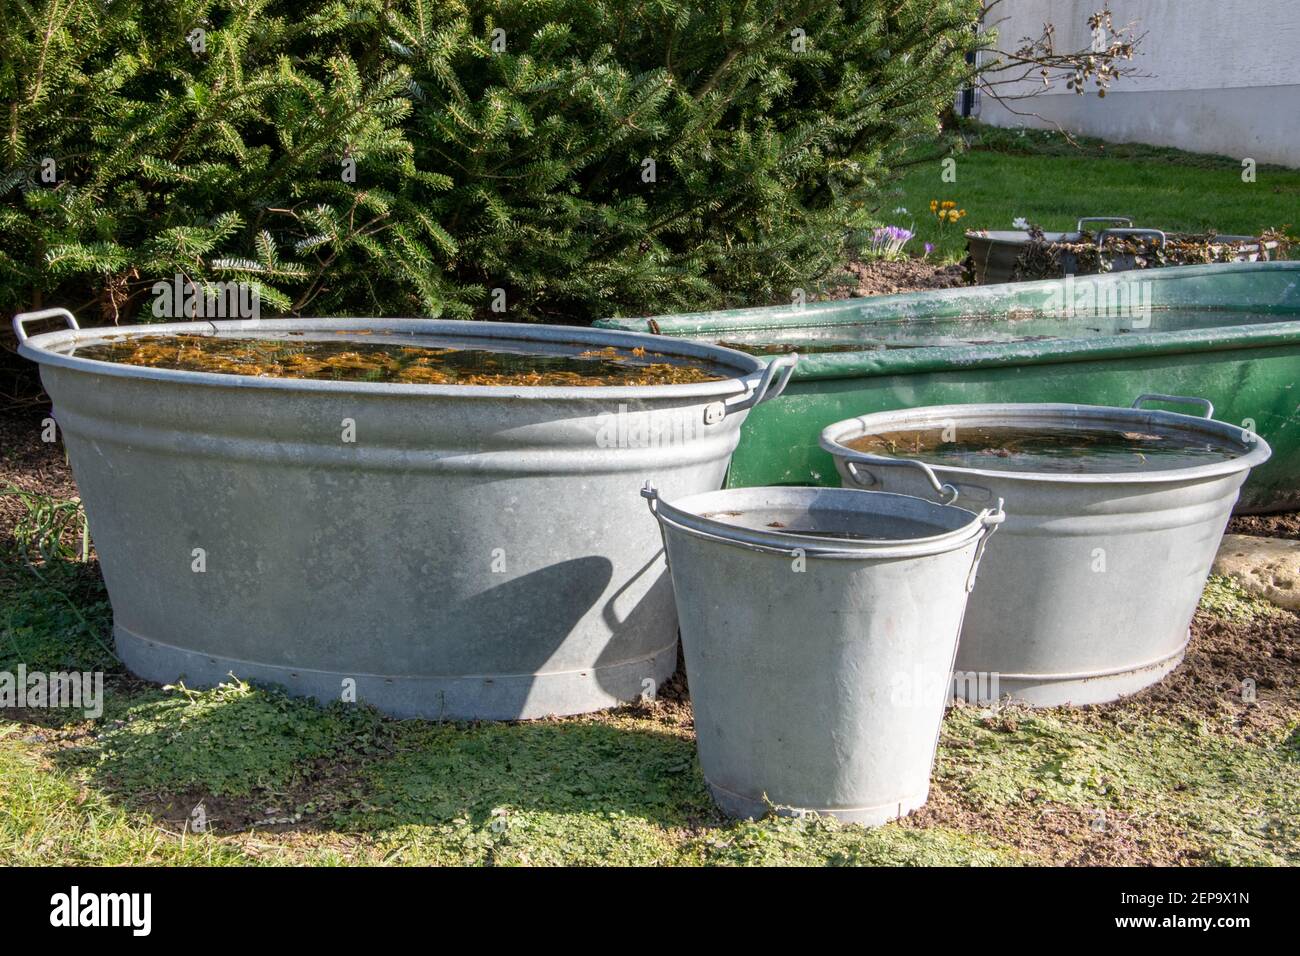 Trois vieilles baignoires et seaux en zinc dans un jardin. Ils sont remplis d'eau et sont utilisés comme petits étangs de jardin. Banque D'Images